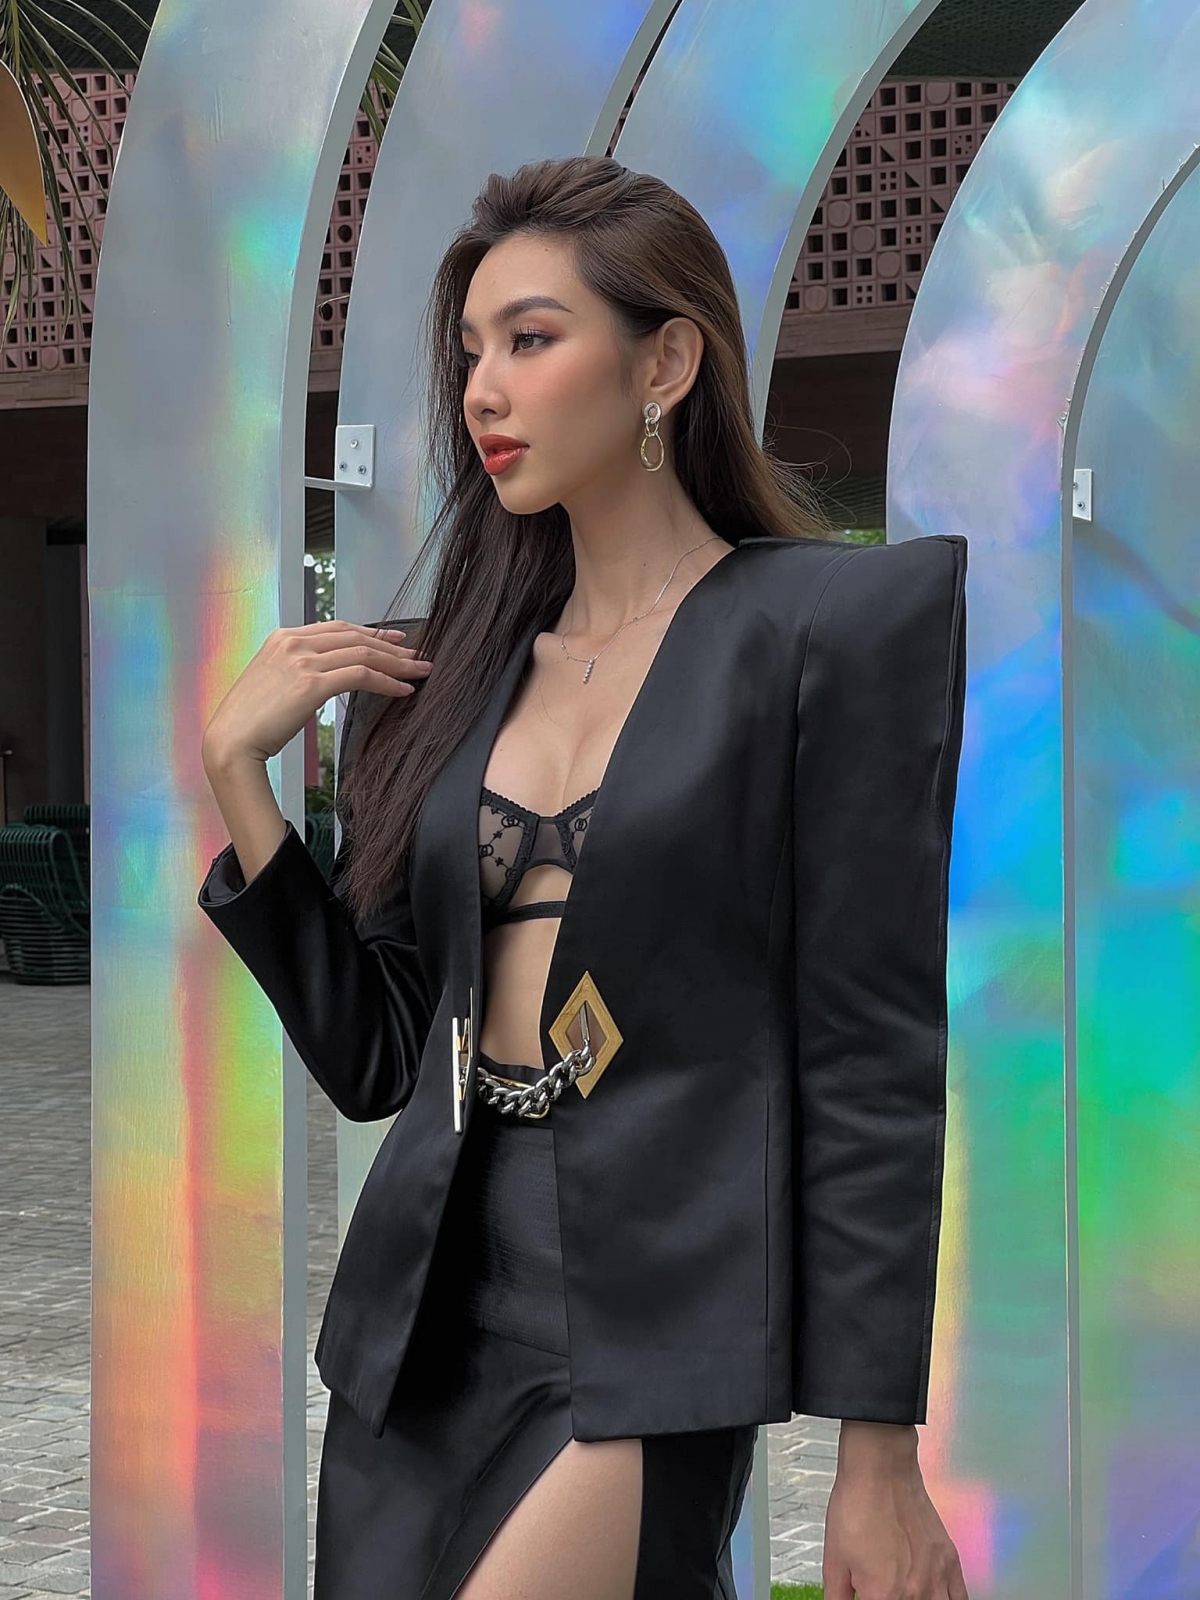 Hoa hậu Thùy Tiên diện đồ hở bạo lộ nội y nóng bỏng - Ảnh 4.